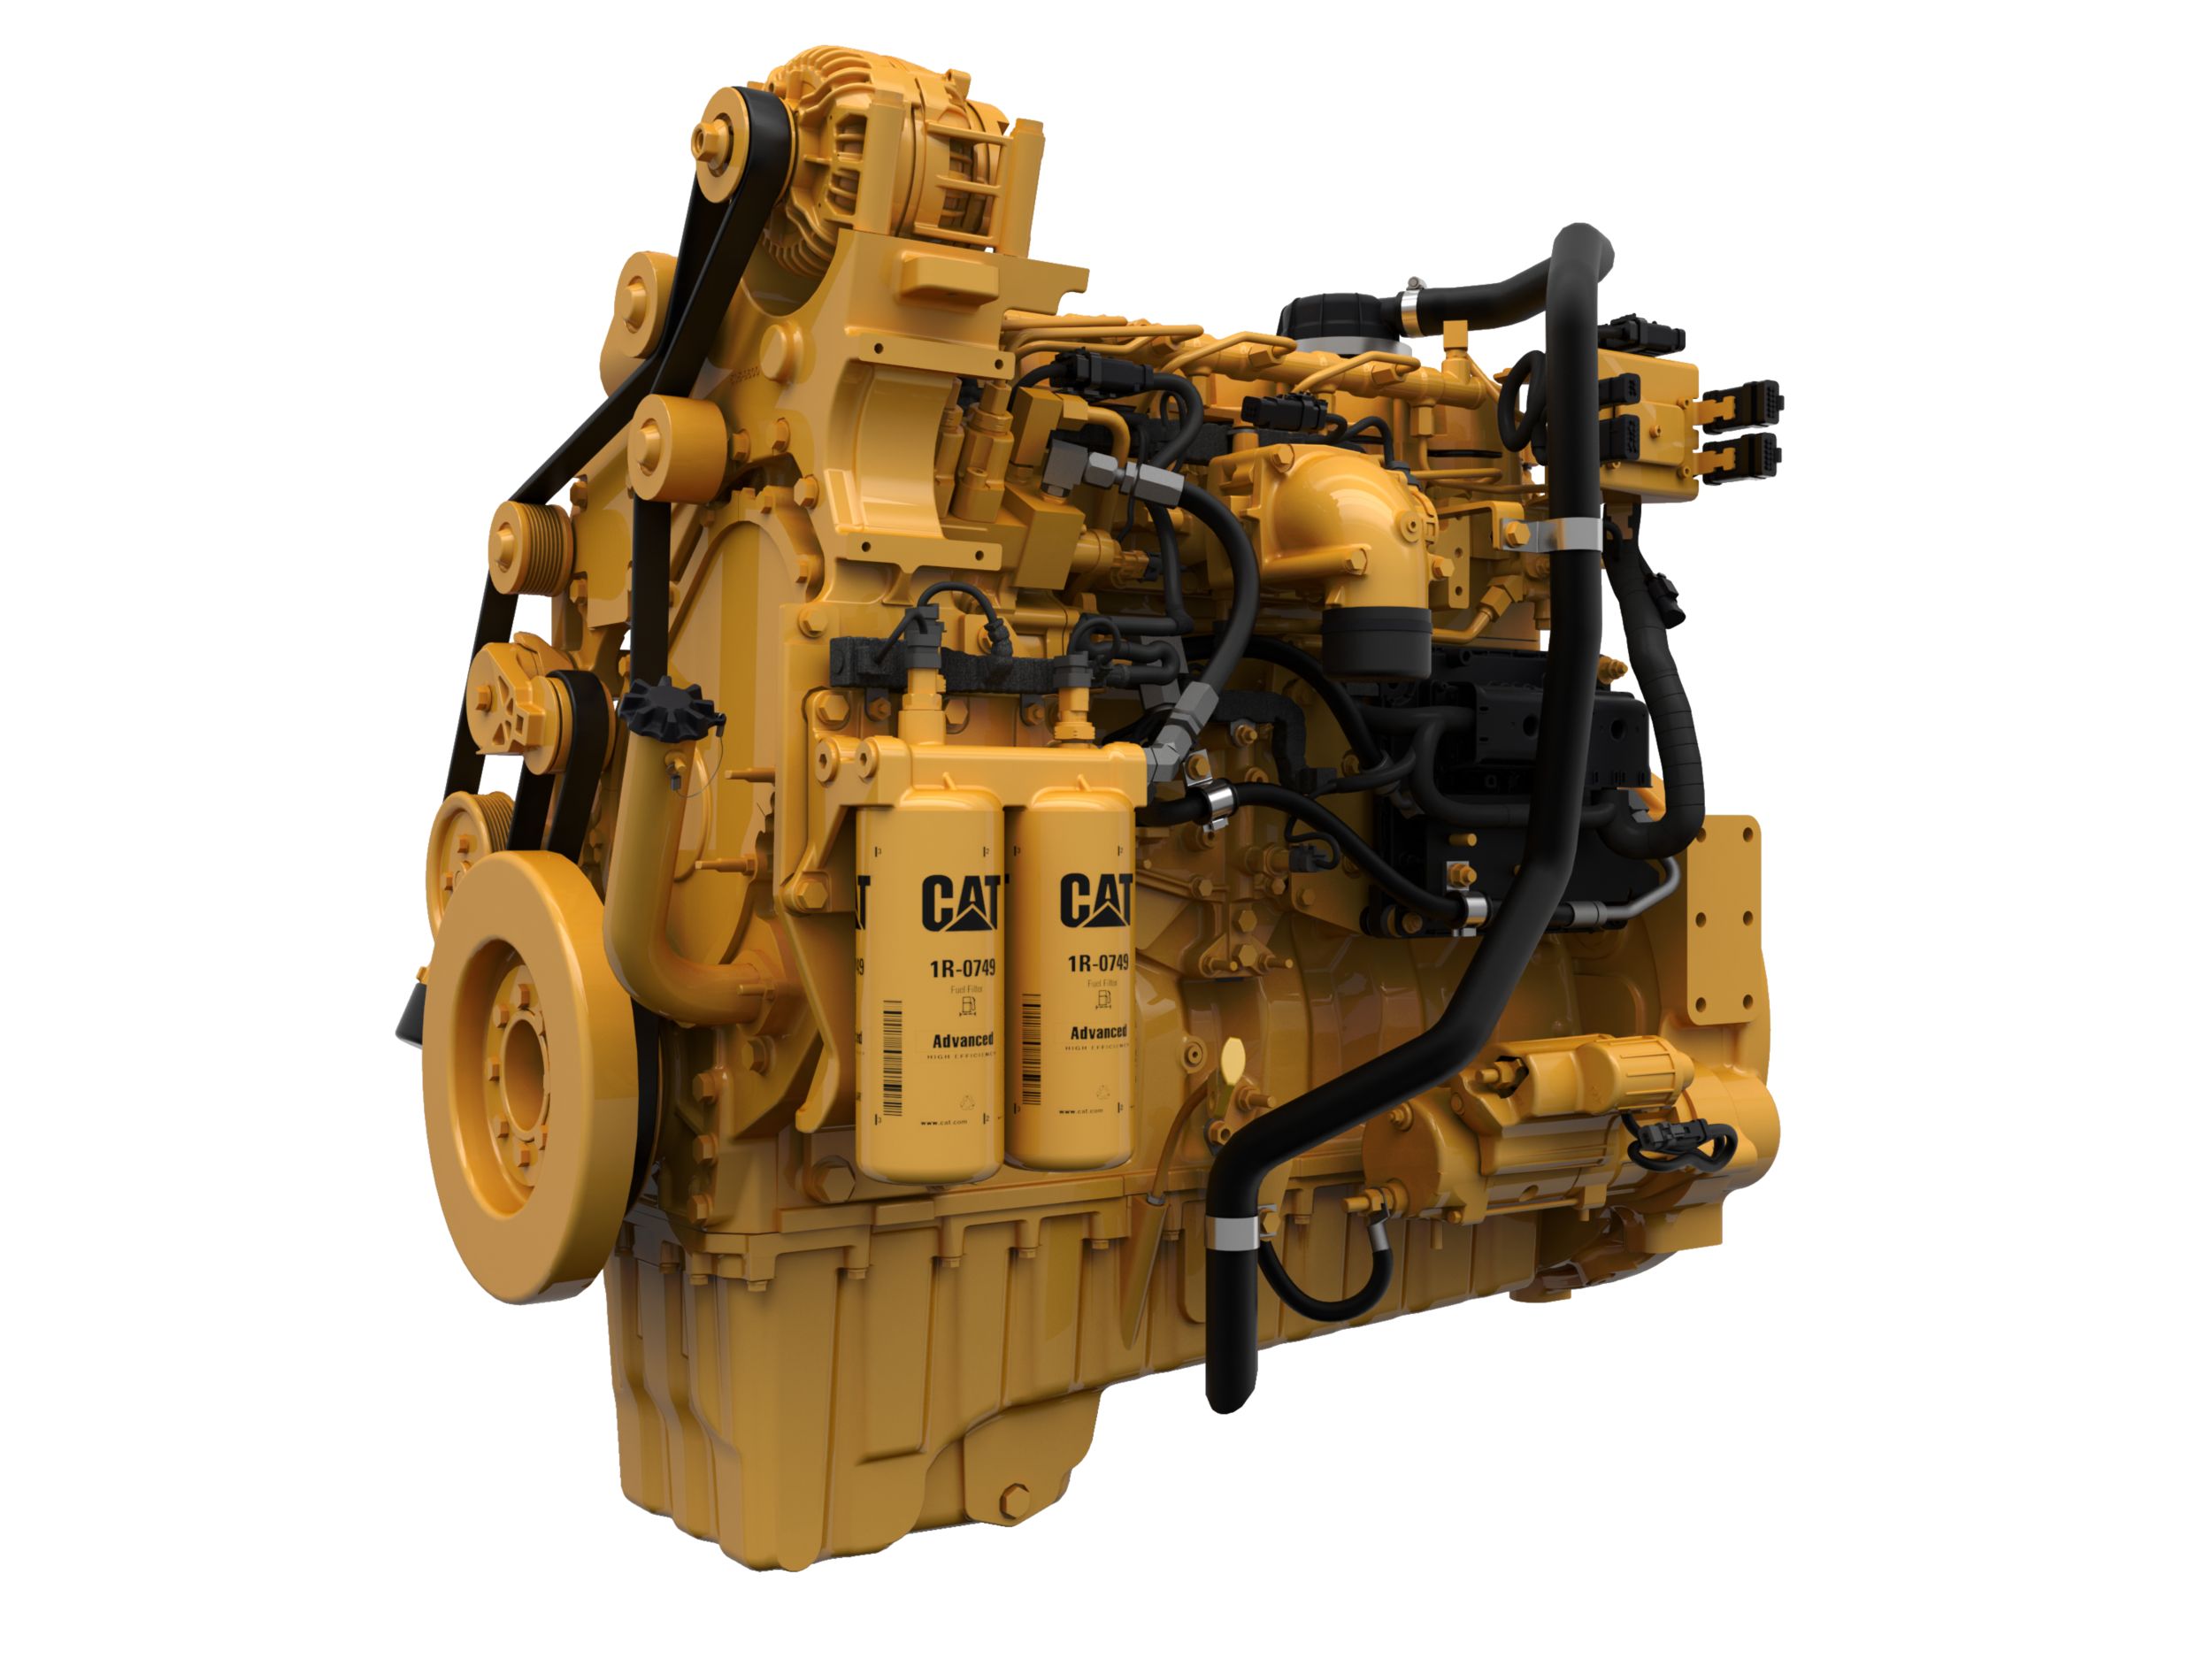 Cat®-C9.3B Diesel Engine